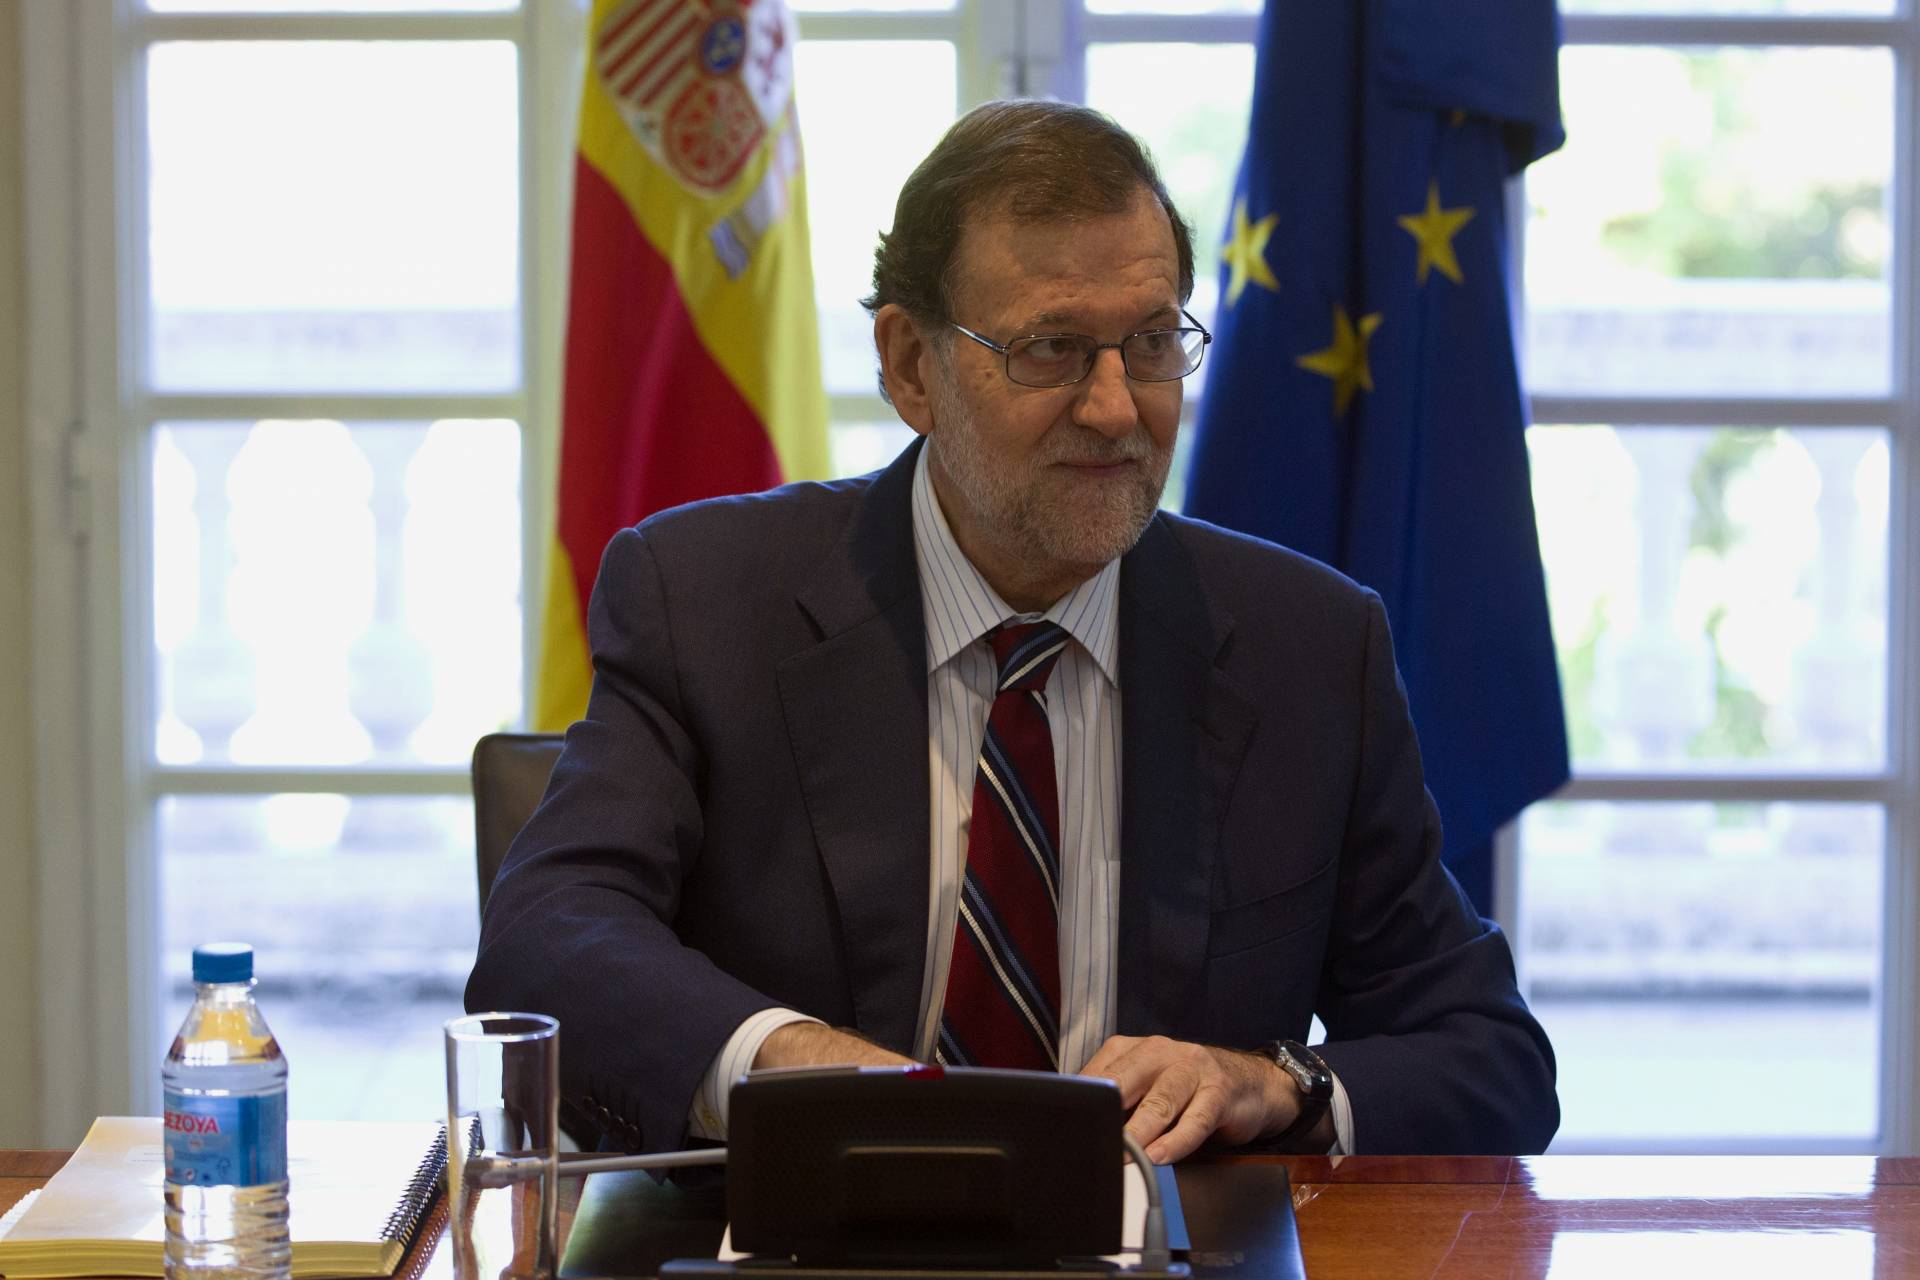 Rajoy presiona: o posición clara por la abstención o dirá al Rey que no tiene apoyos